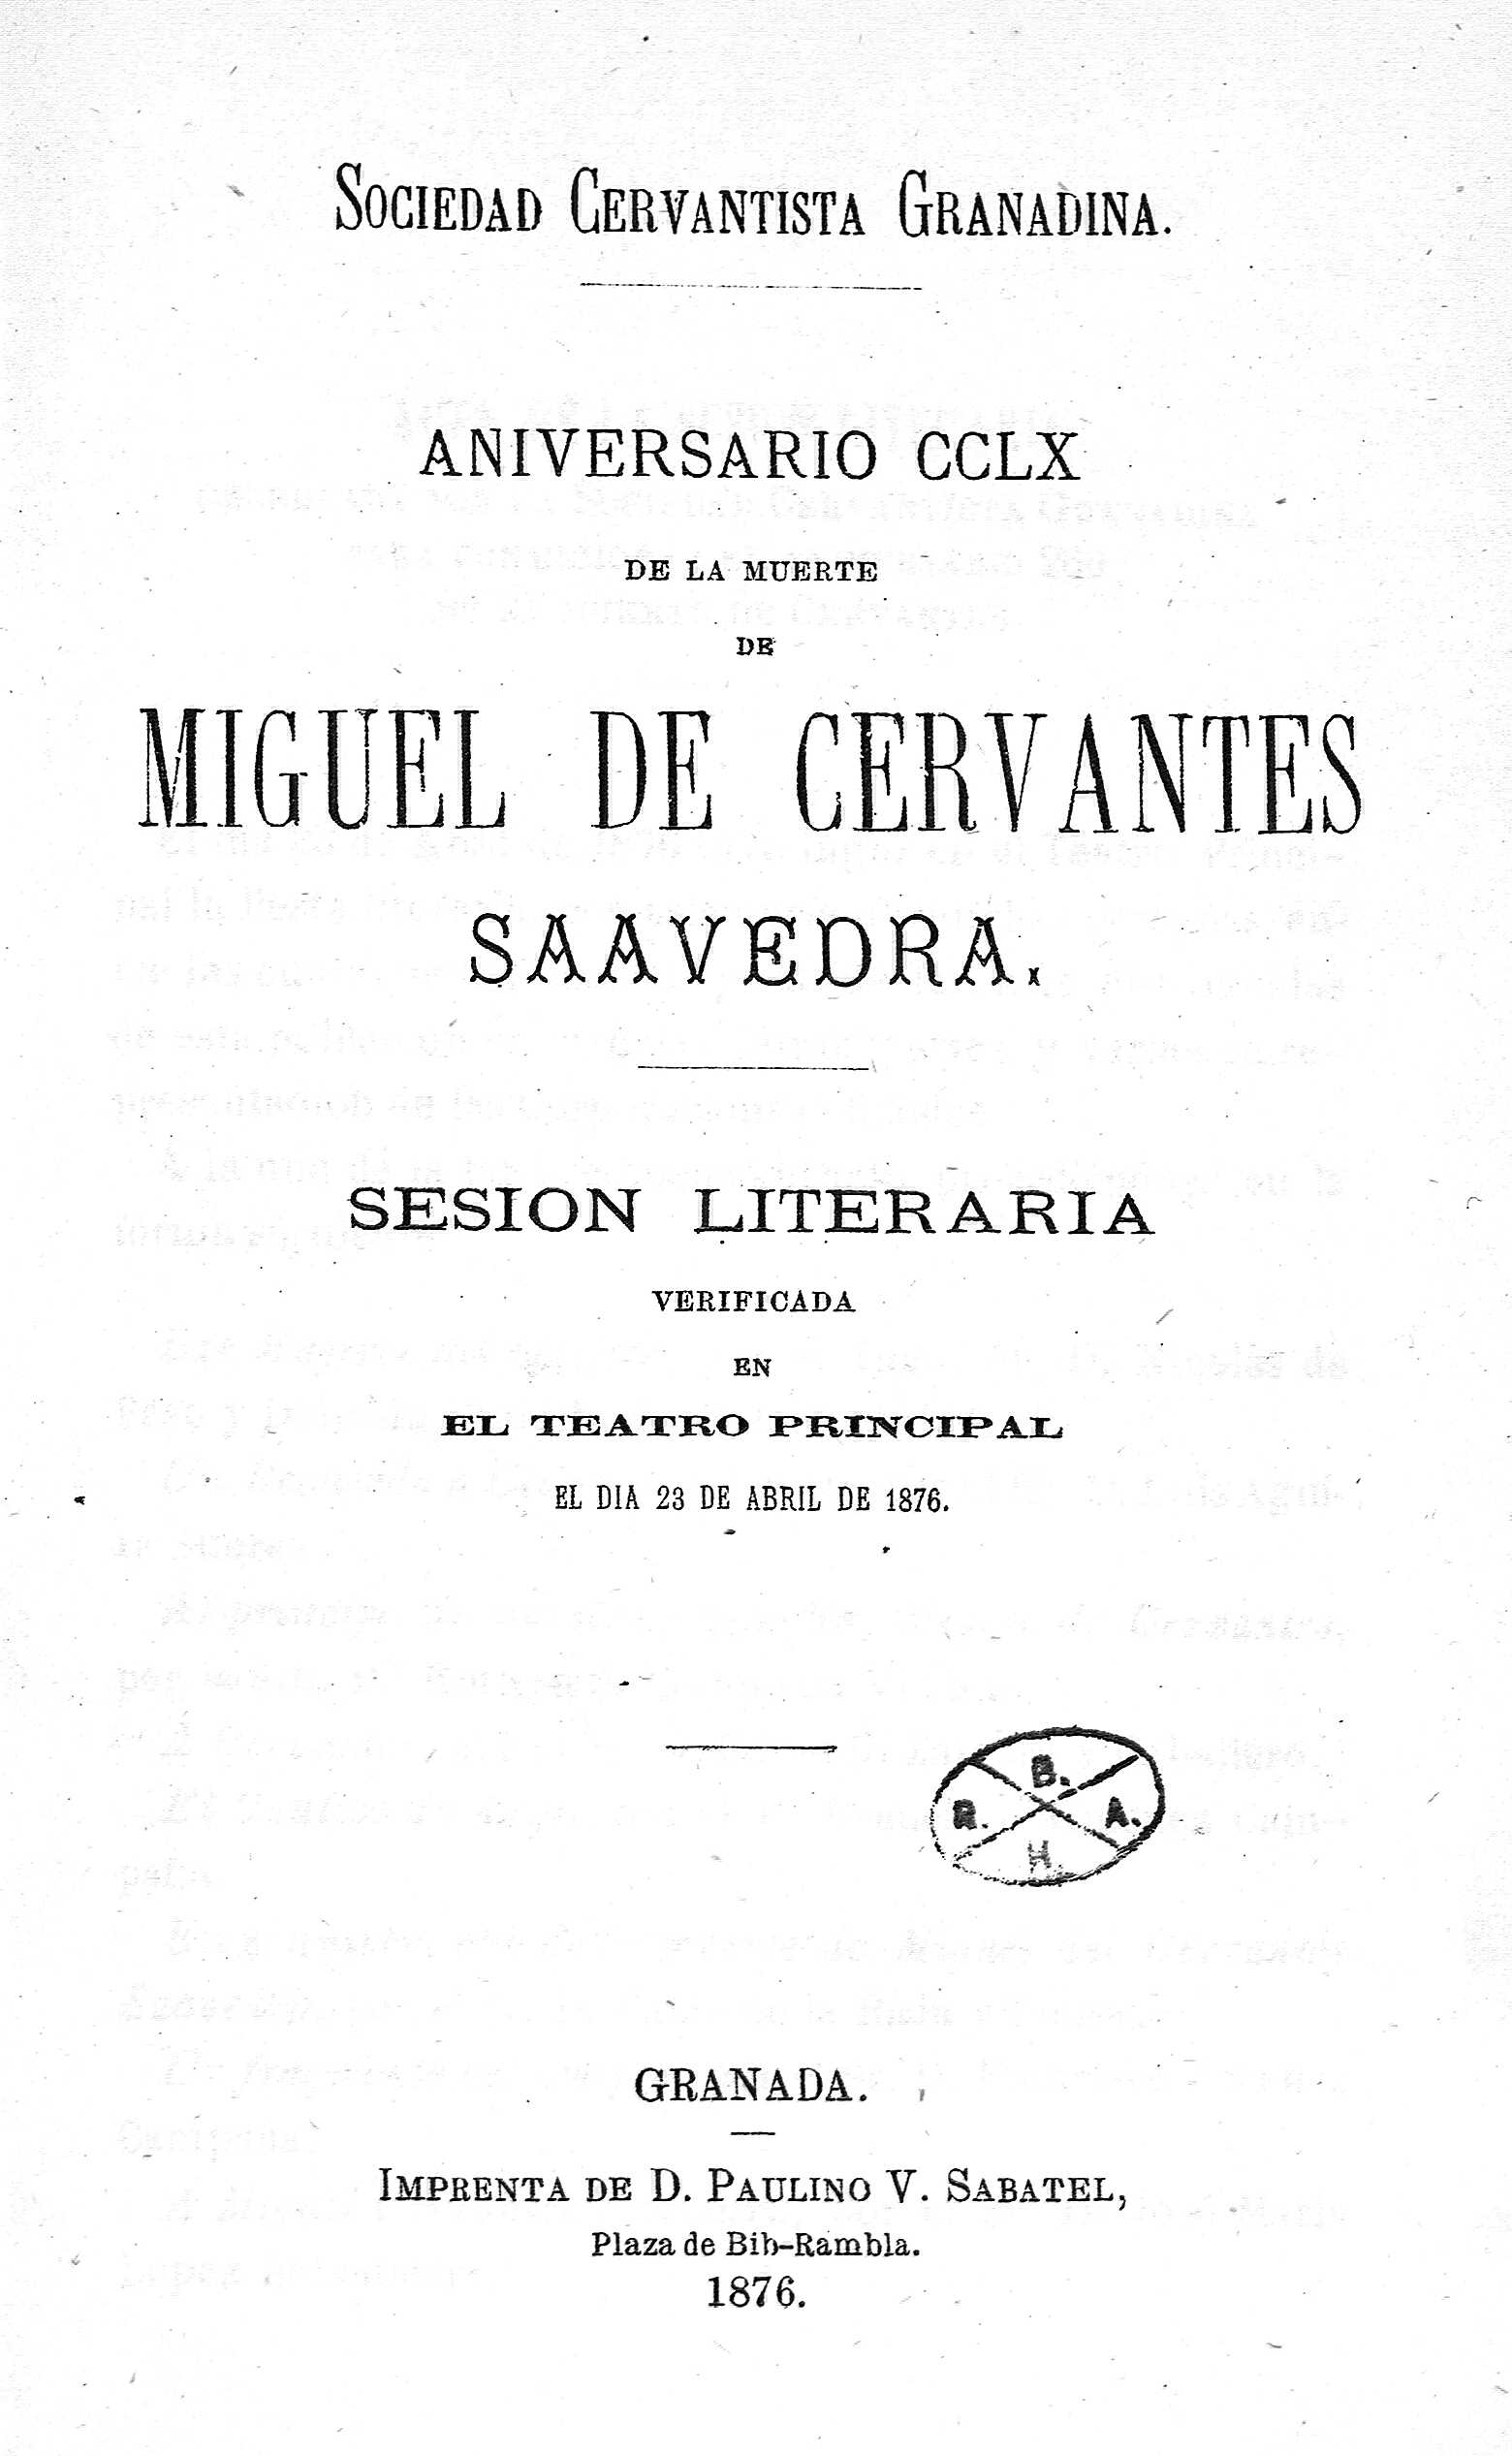 Aniversario CCLX de la muerte de Miguel de Cervantes Saavedra. Sesion literaria